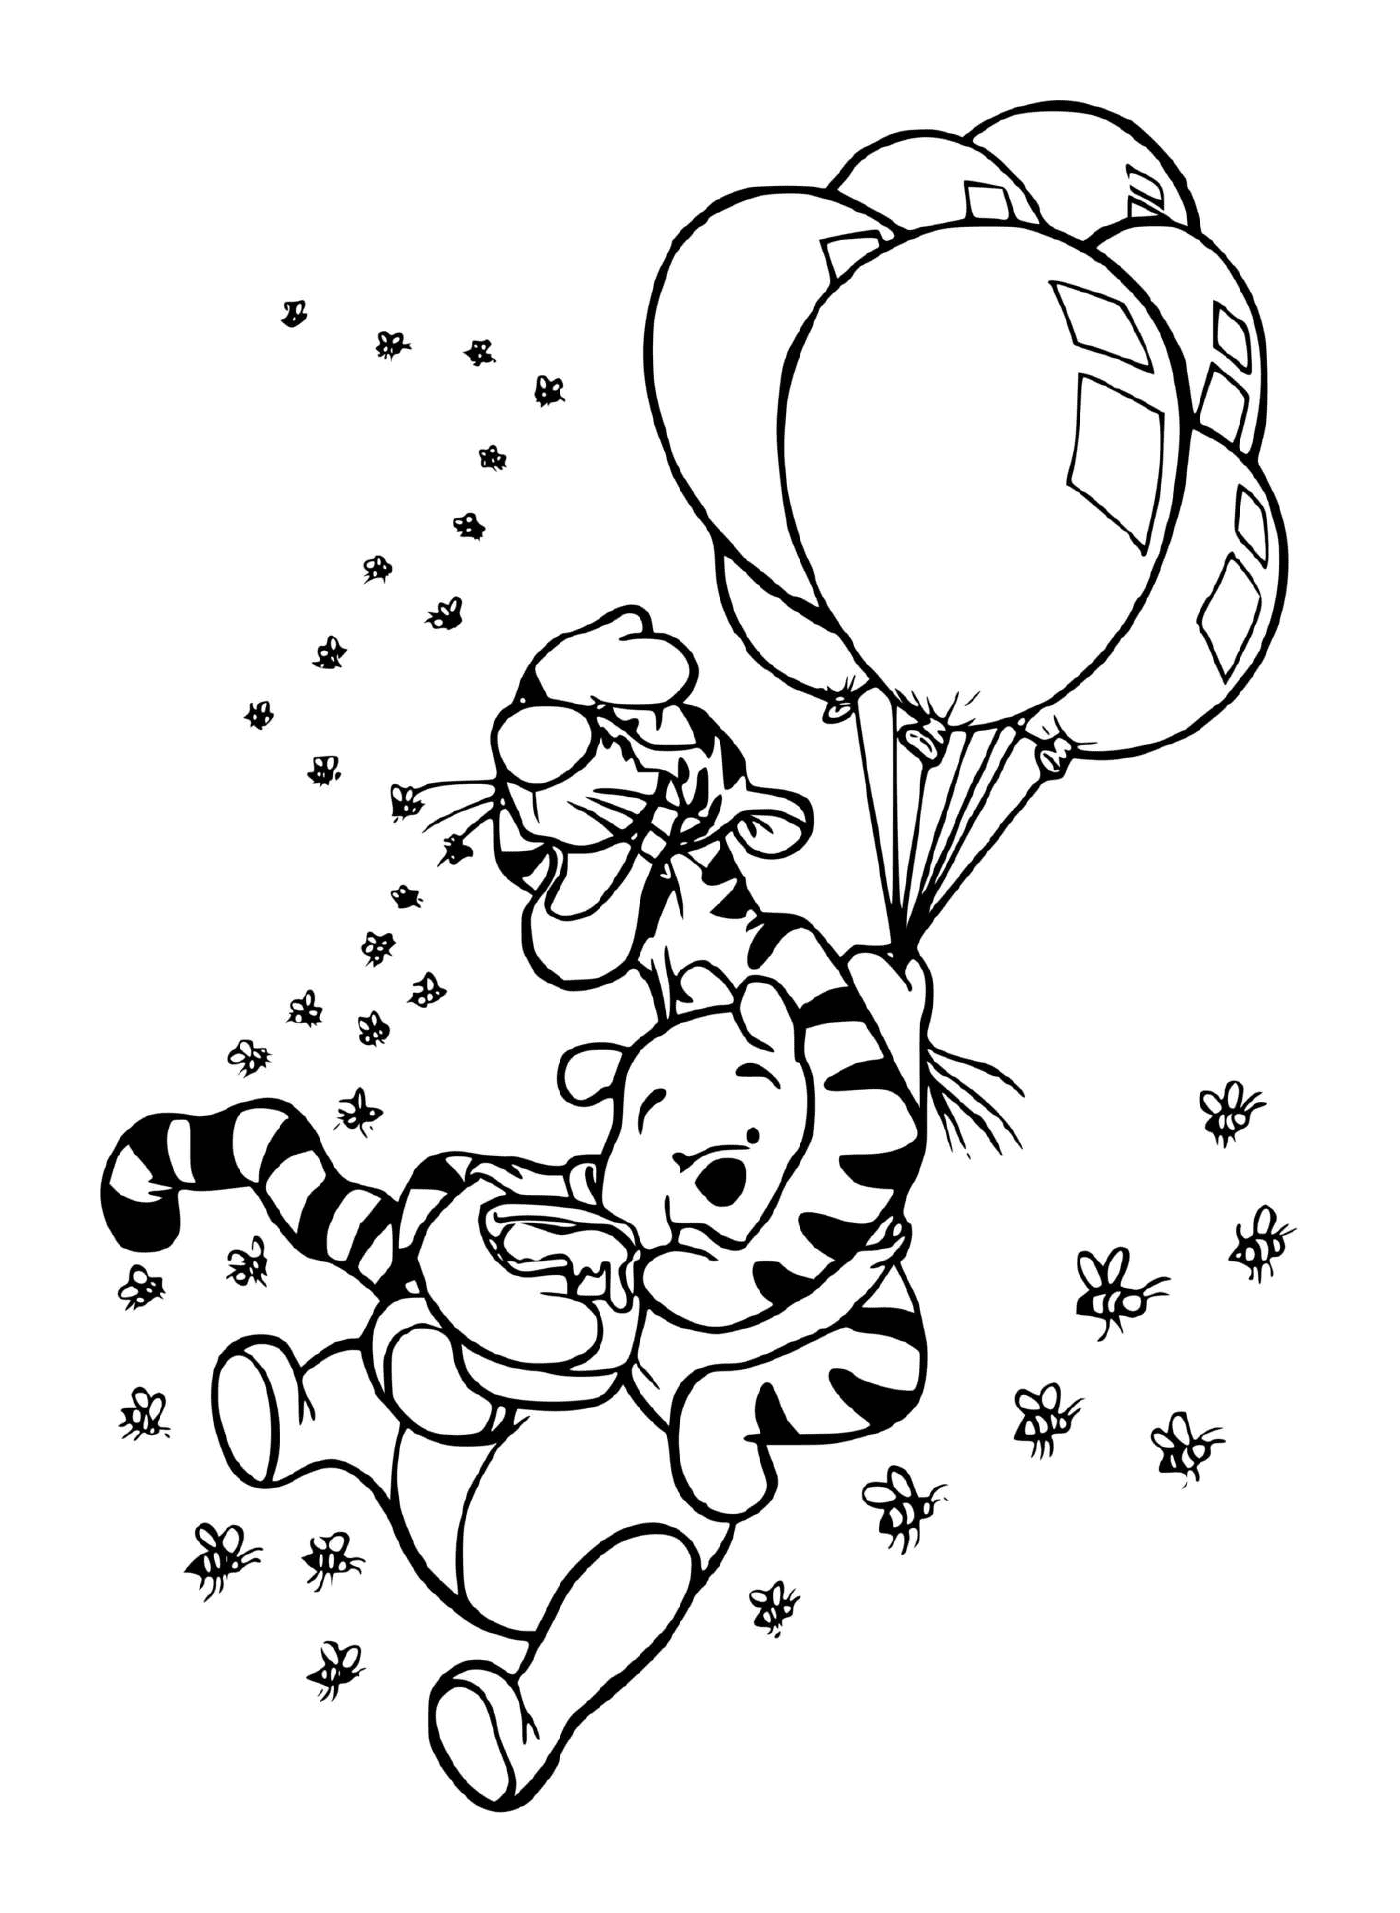  Tigrou und Winnie in der Luft mit Ballons und einem Topf Honig 